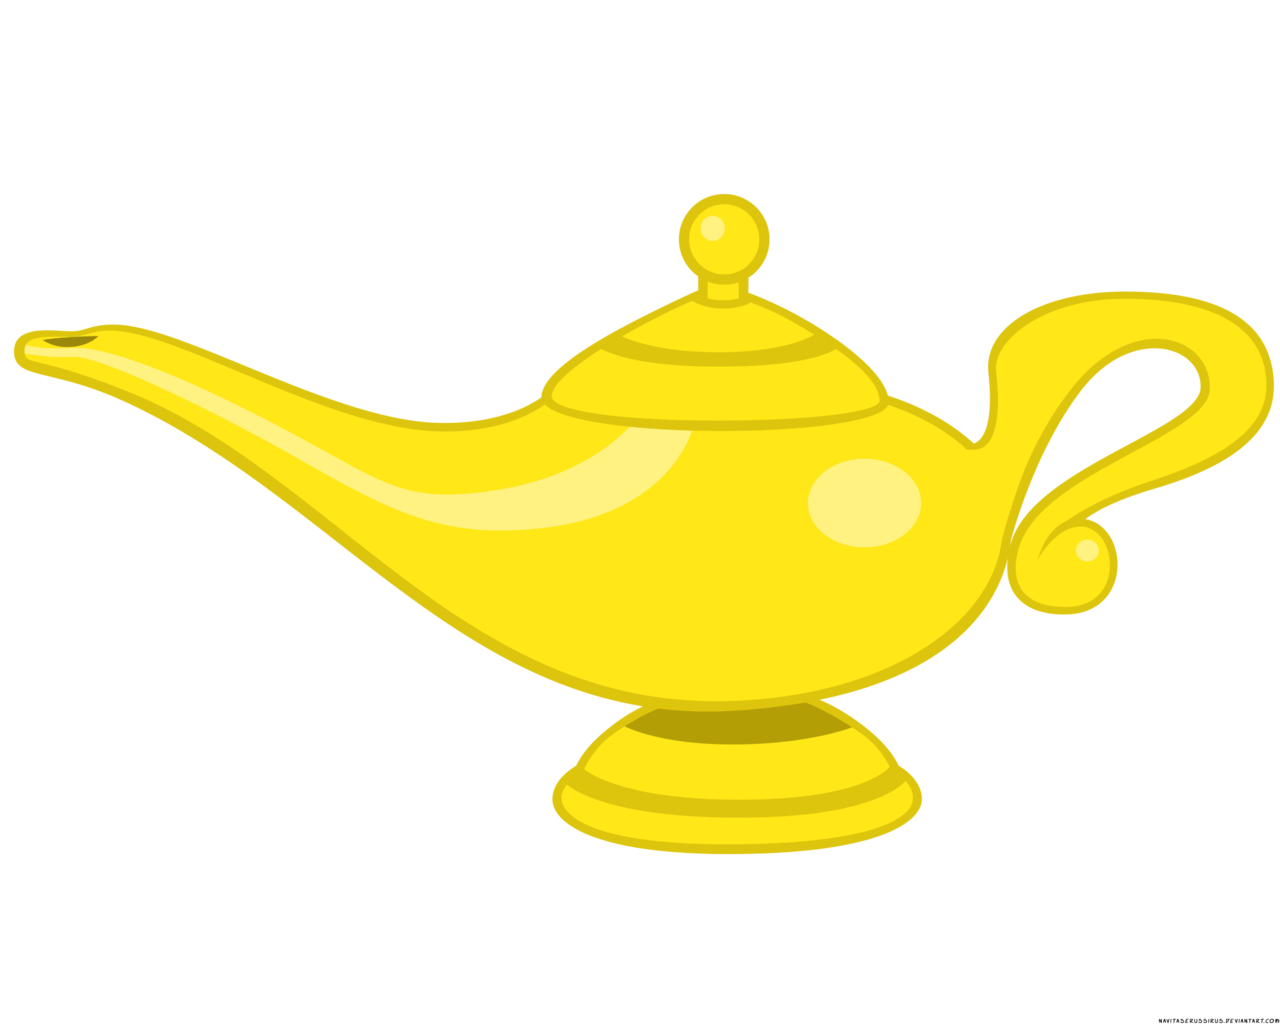 Golden Genie Lamp Transparent Background